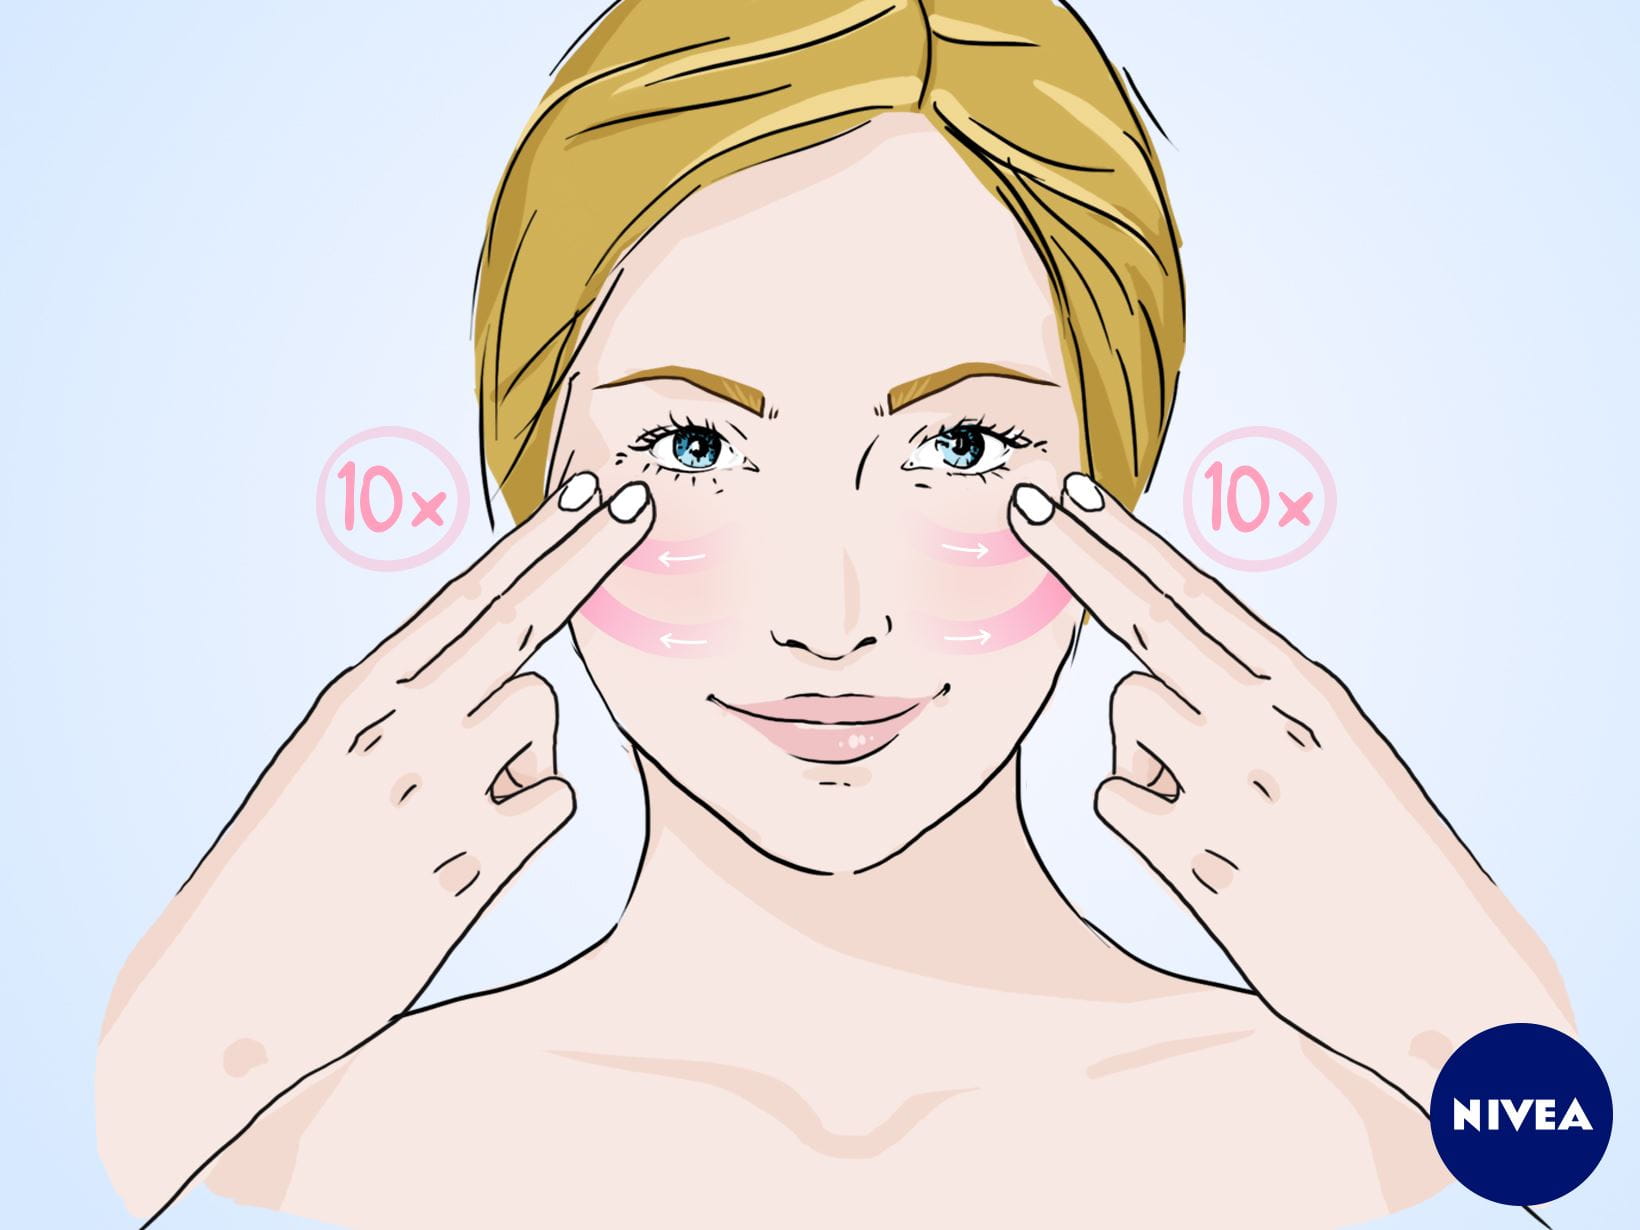 : NIVEA Gesichtsmassage-Anleitung: Massagegriff für rosige Wangen